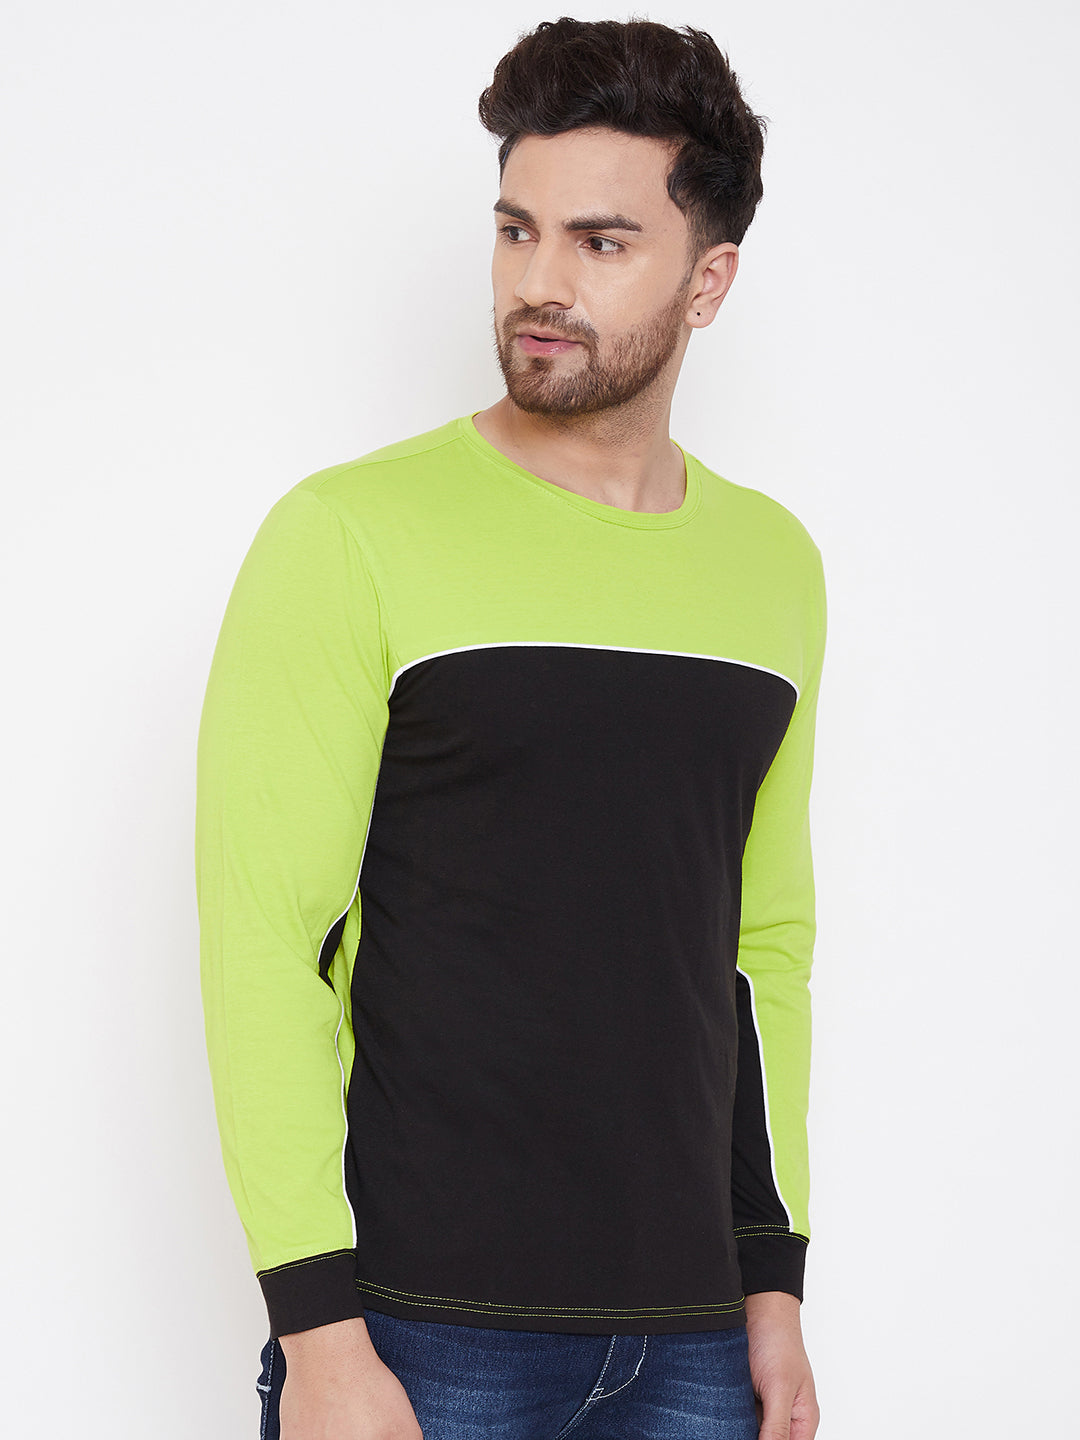 Neon Green/White/Black Color Block Men's Full Sleeves Round Neck T-Shirt